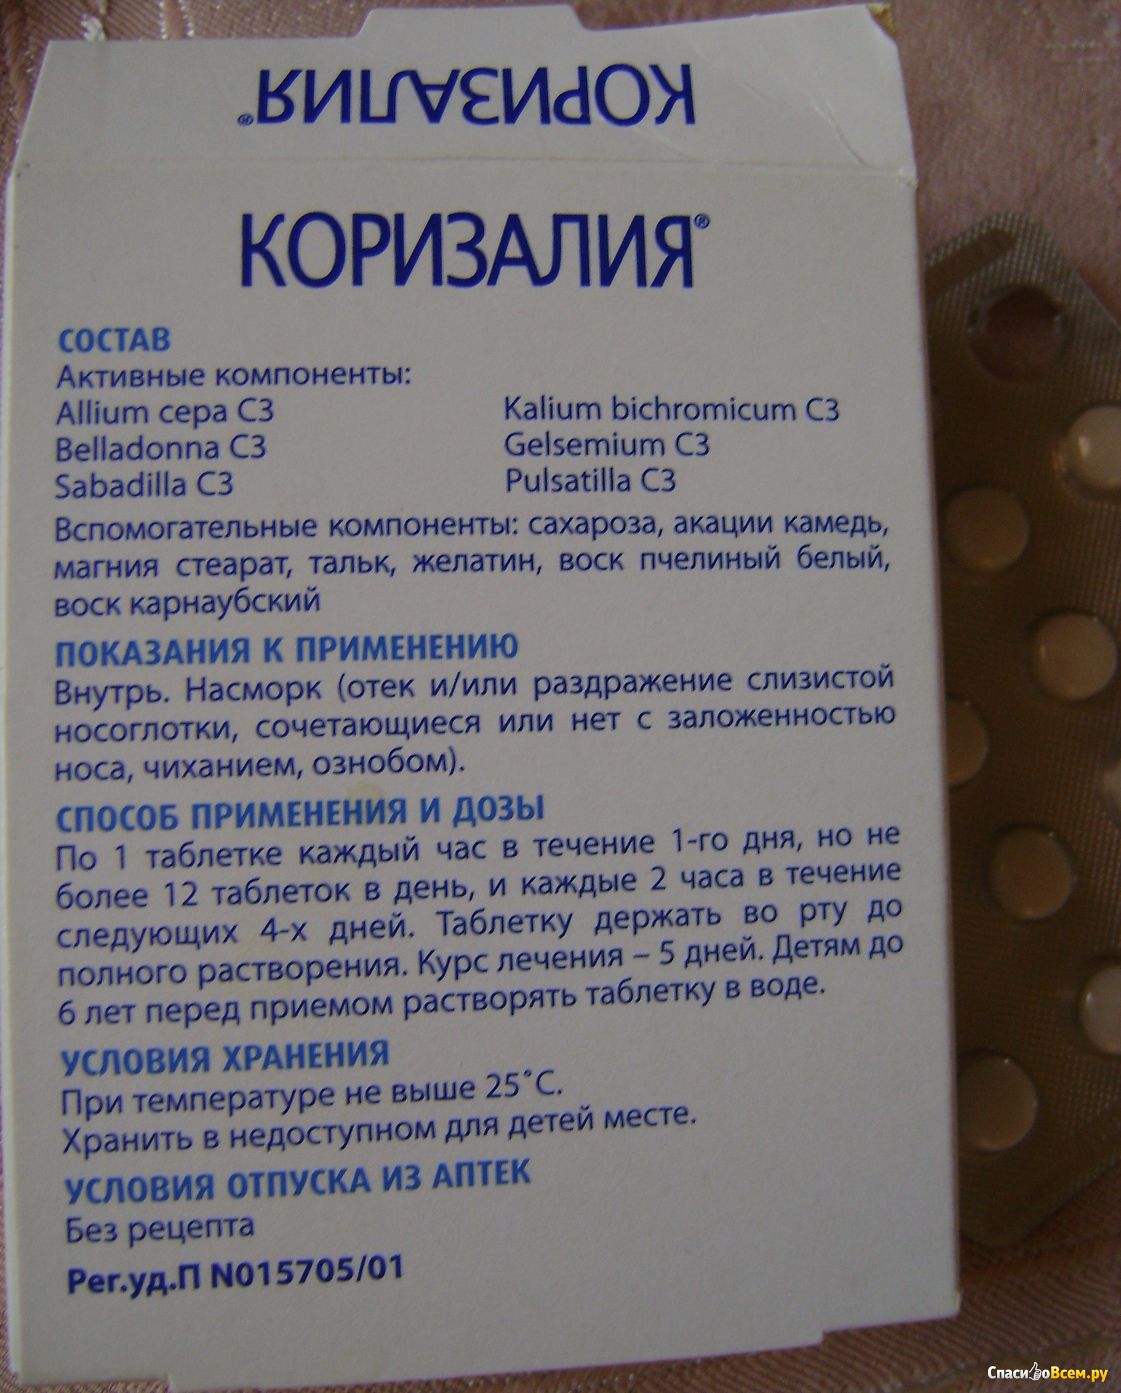 Коризалия насморк инструкция. Гомеопатические таблетки от насморка. Препарат от насморка гомеопатия. Таблетки для лечения насморка и заложенности носа. Таблетки от ринита для детей.